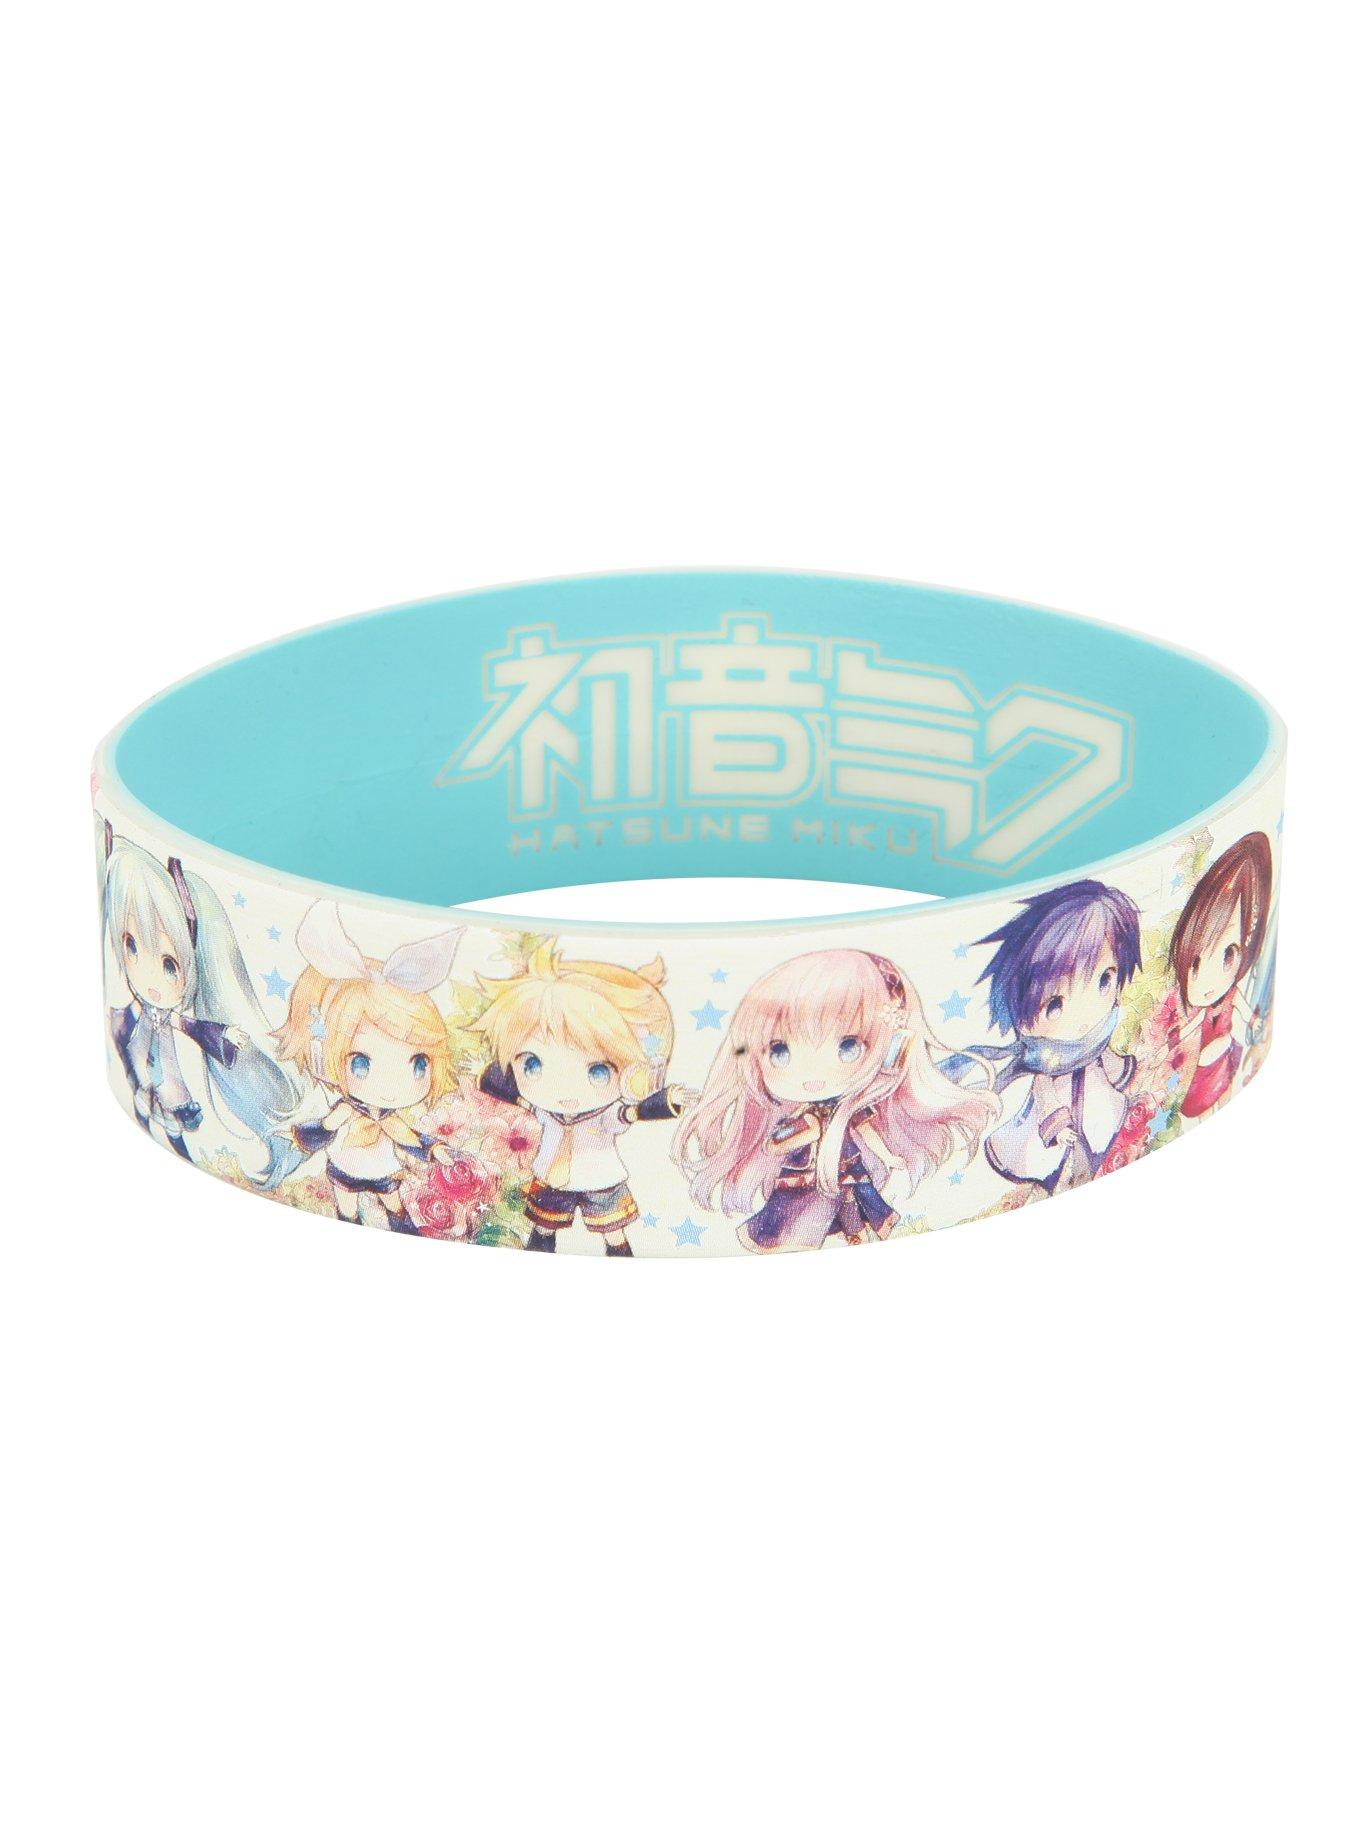 Hatsune Miku Chibi Rubber Bracelet, , hi-res